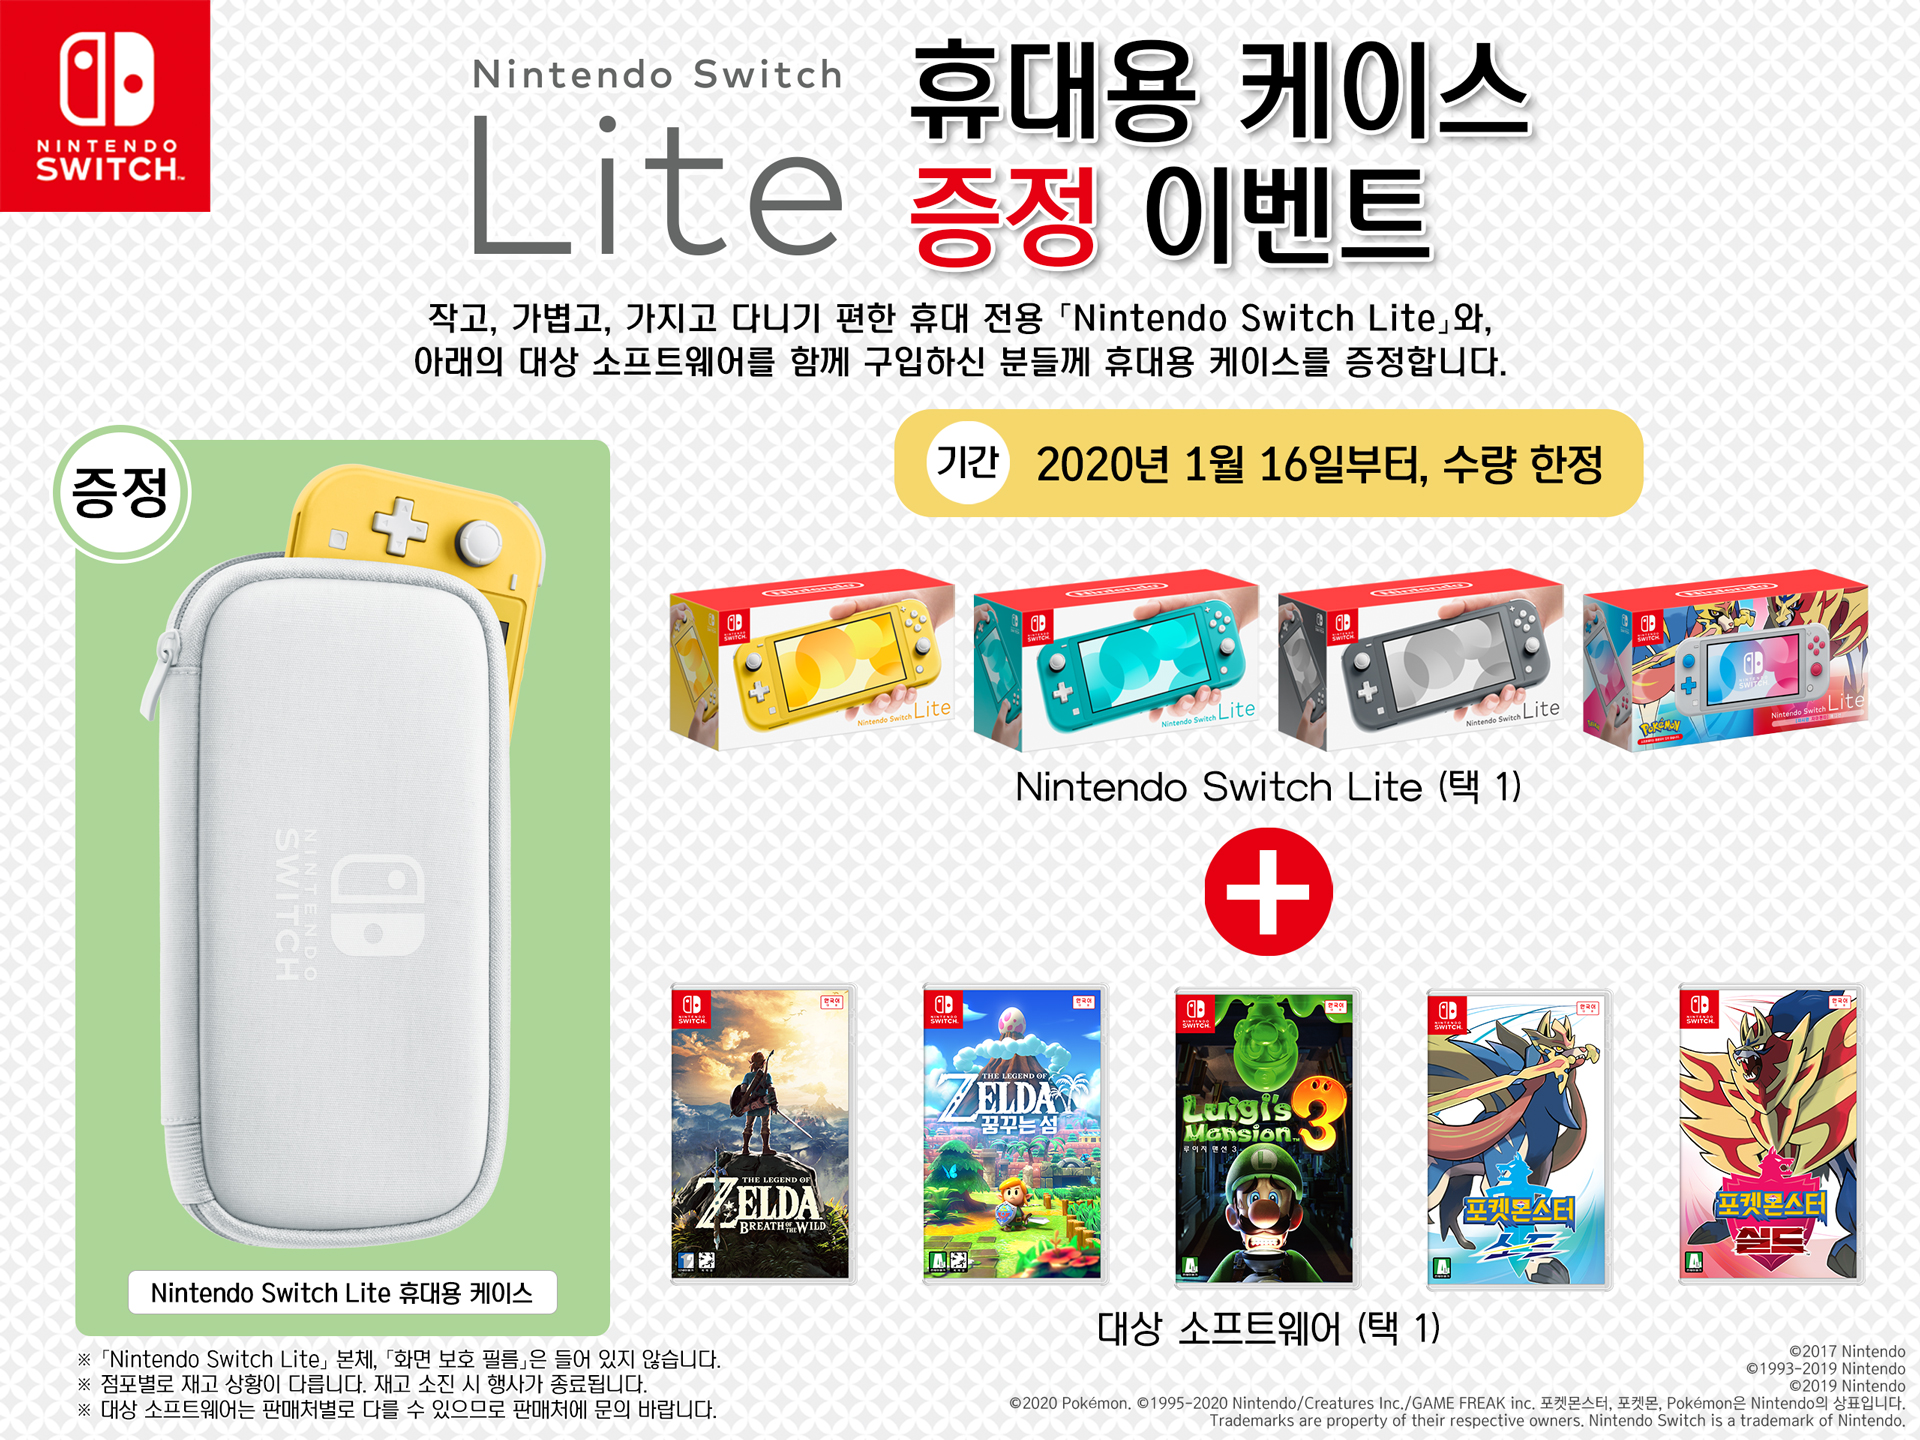 Switch Lite本体 と対象ソフトを一緒に購入した方に キャリングケース をプレゼントするキャンペーンが韓国で実施中 Nintendo Switch 情報ブログ 非公式